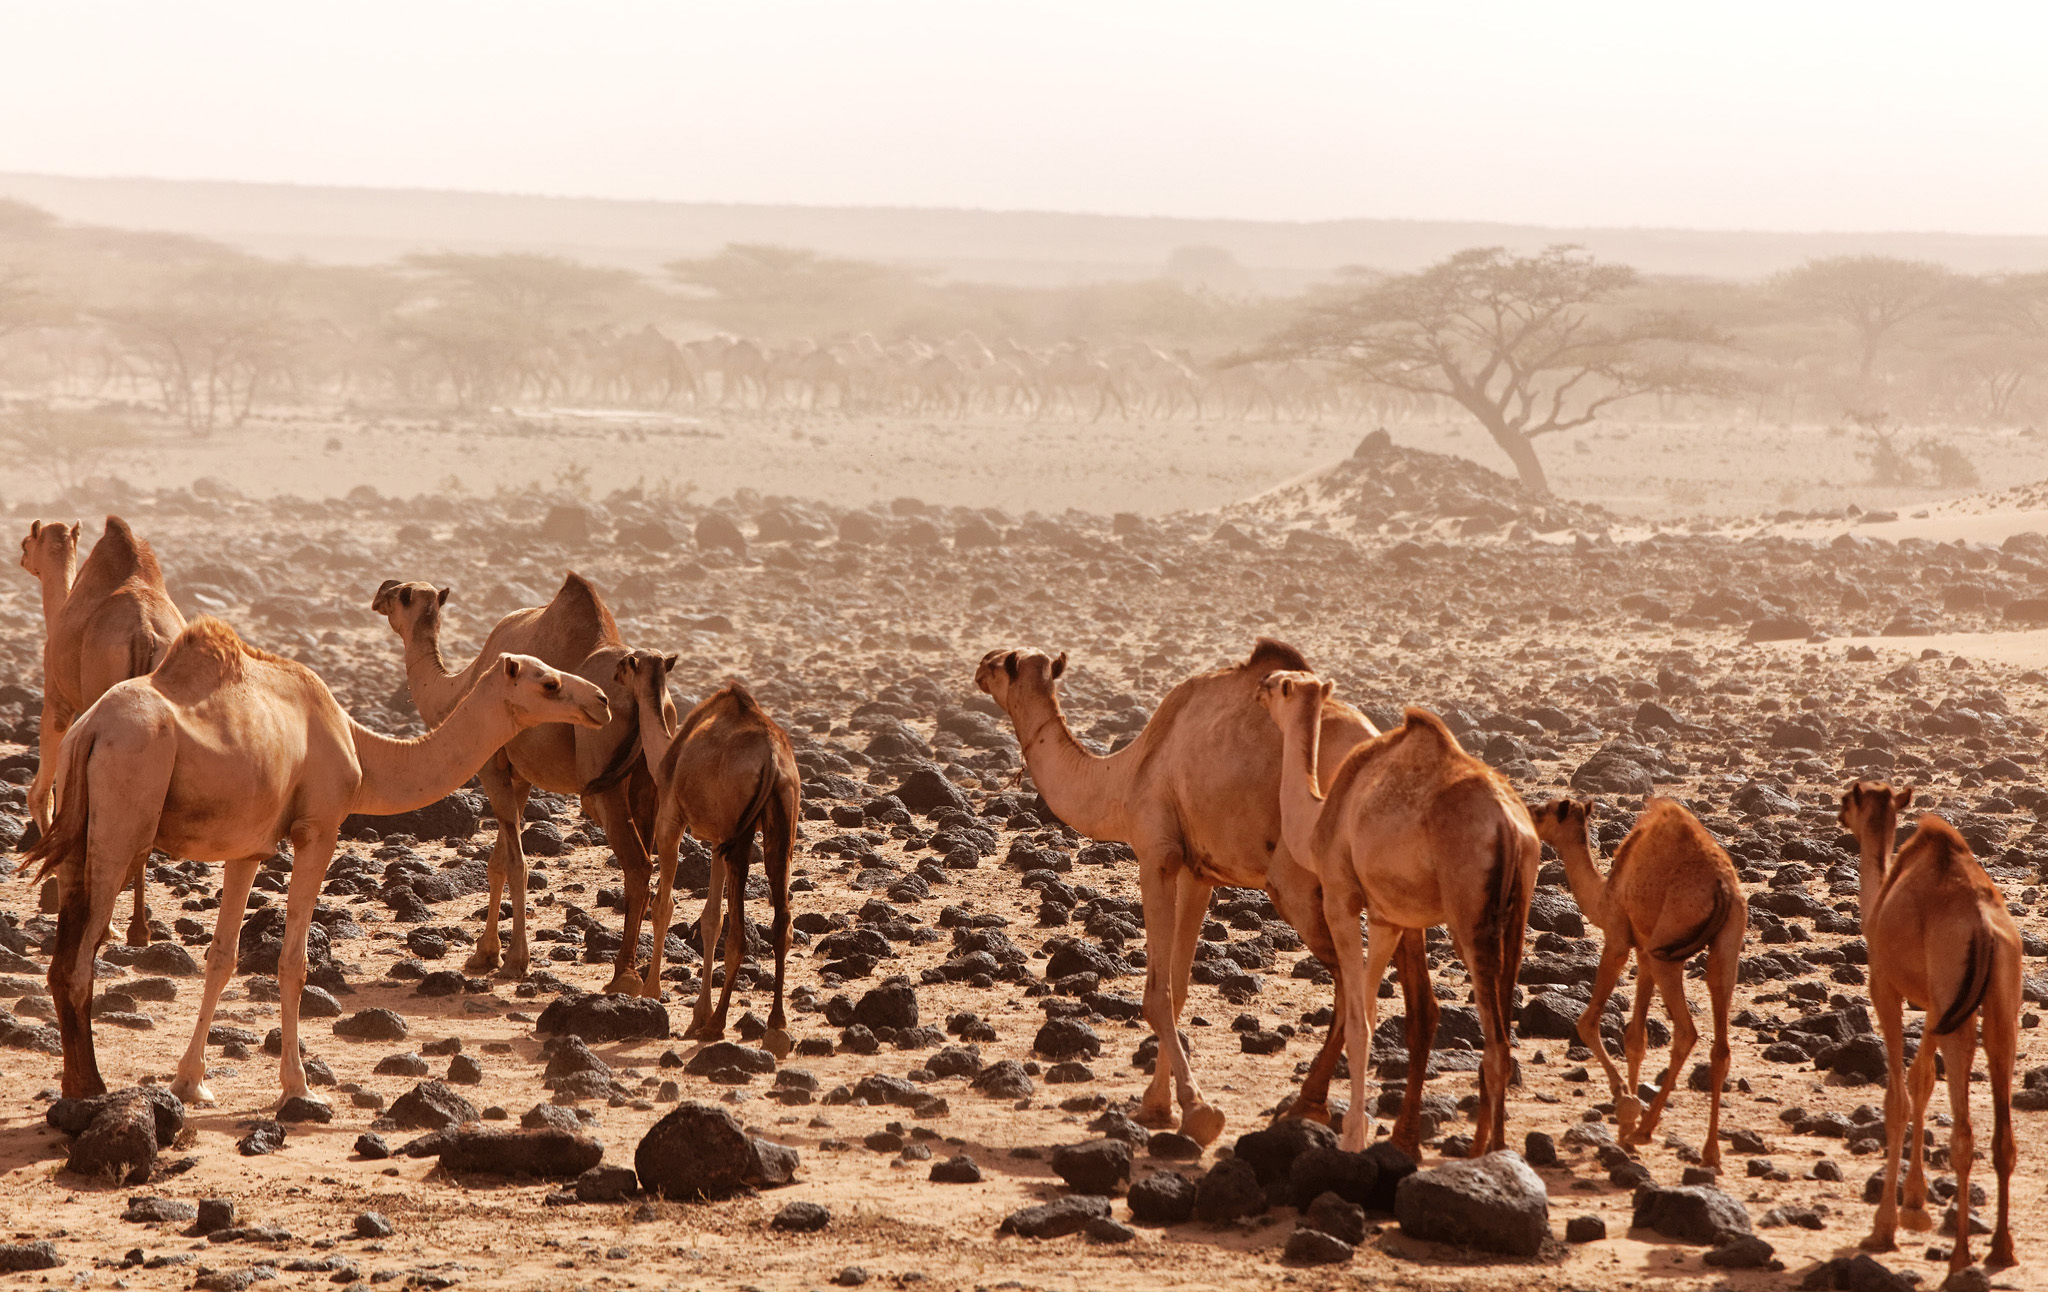 Flock of camels emerged through the sandstorm. North of Marsabit, Chalbi Desert, Kenya